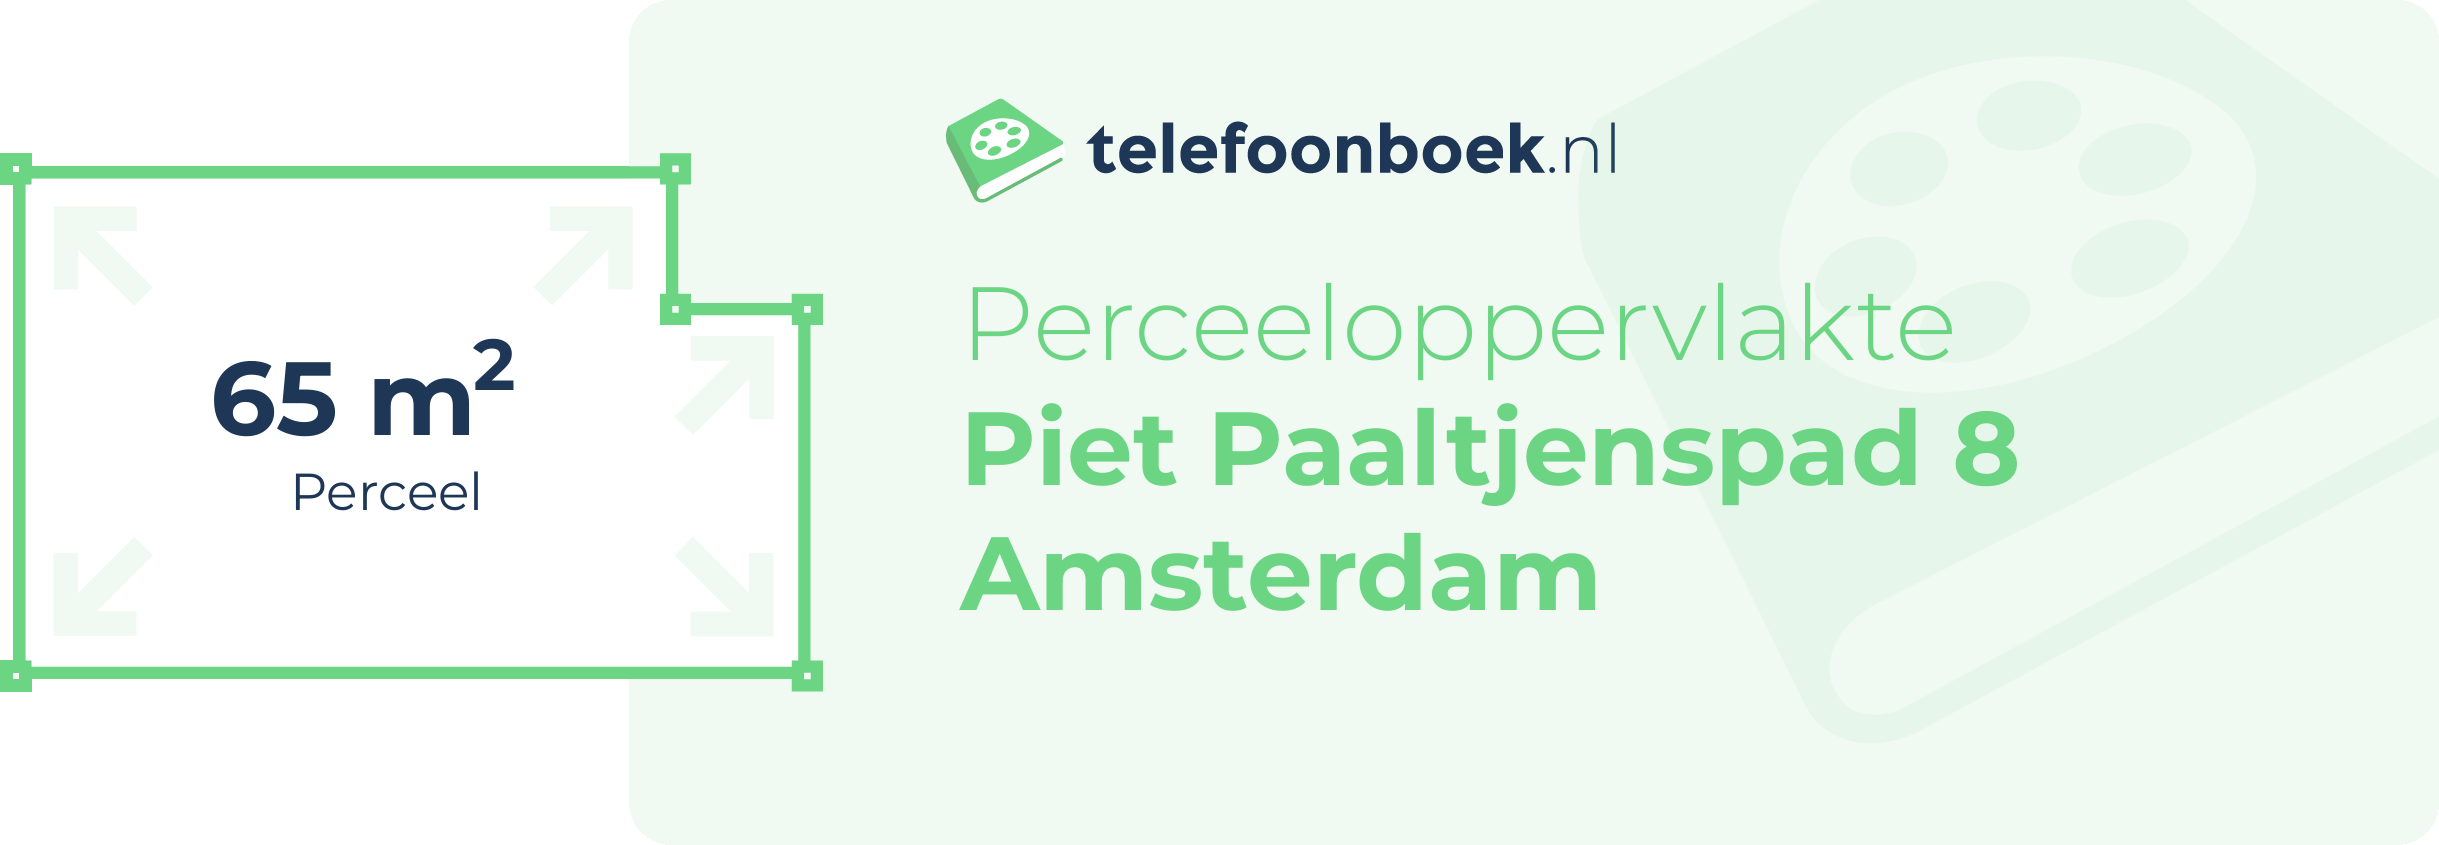 Perceeloppervlakte Piet Paaltjenspad 8 Amsterdam